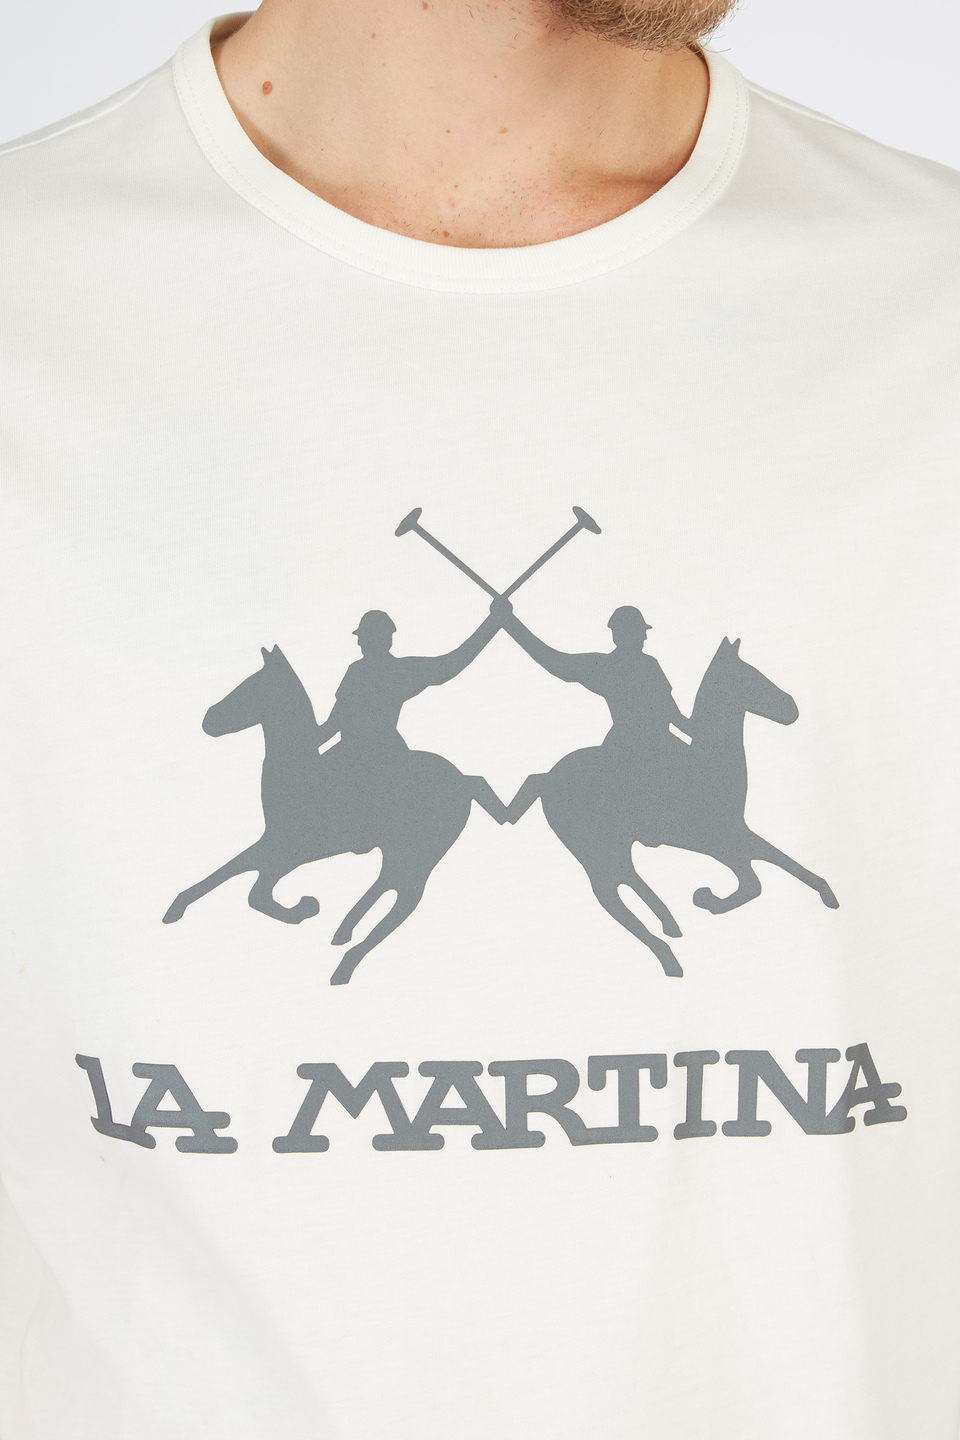 Camiseta hombre corte regular | La Martina - Official Online Shop